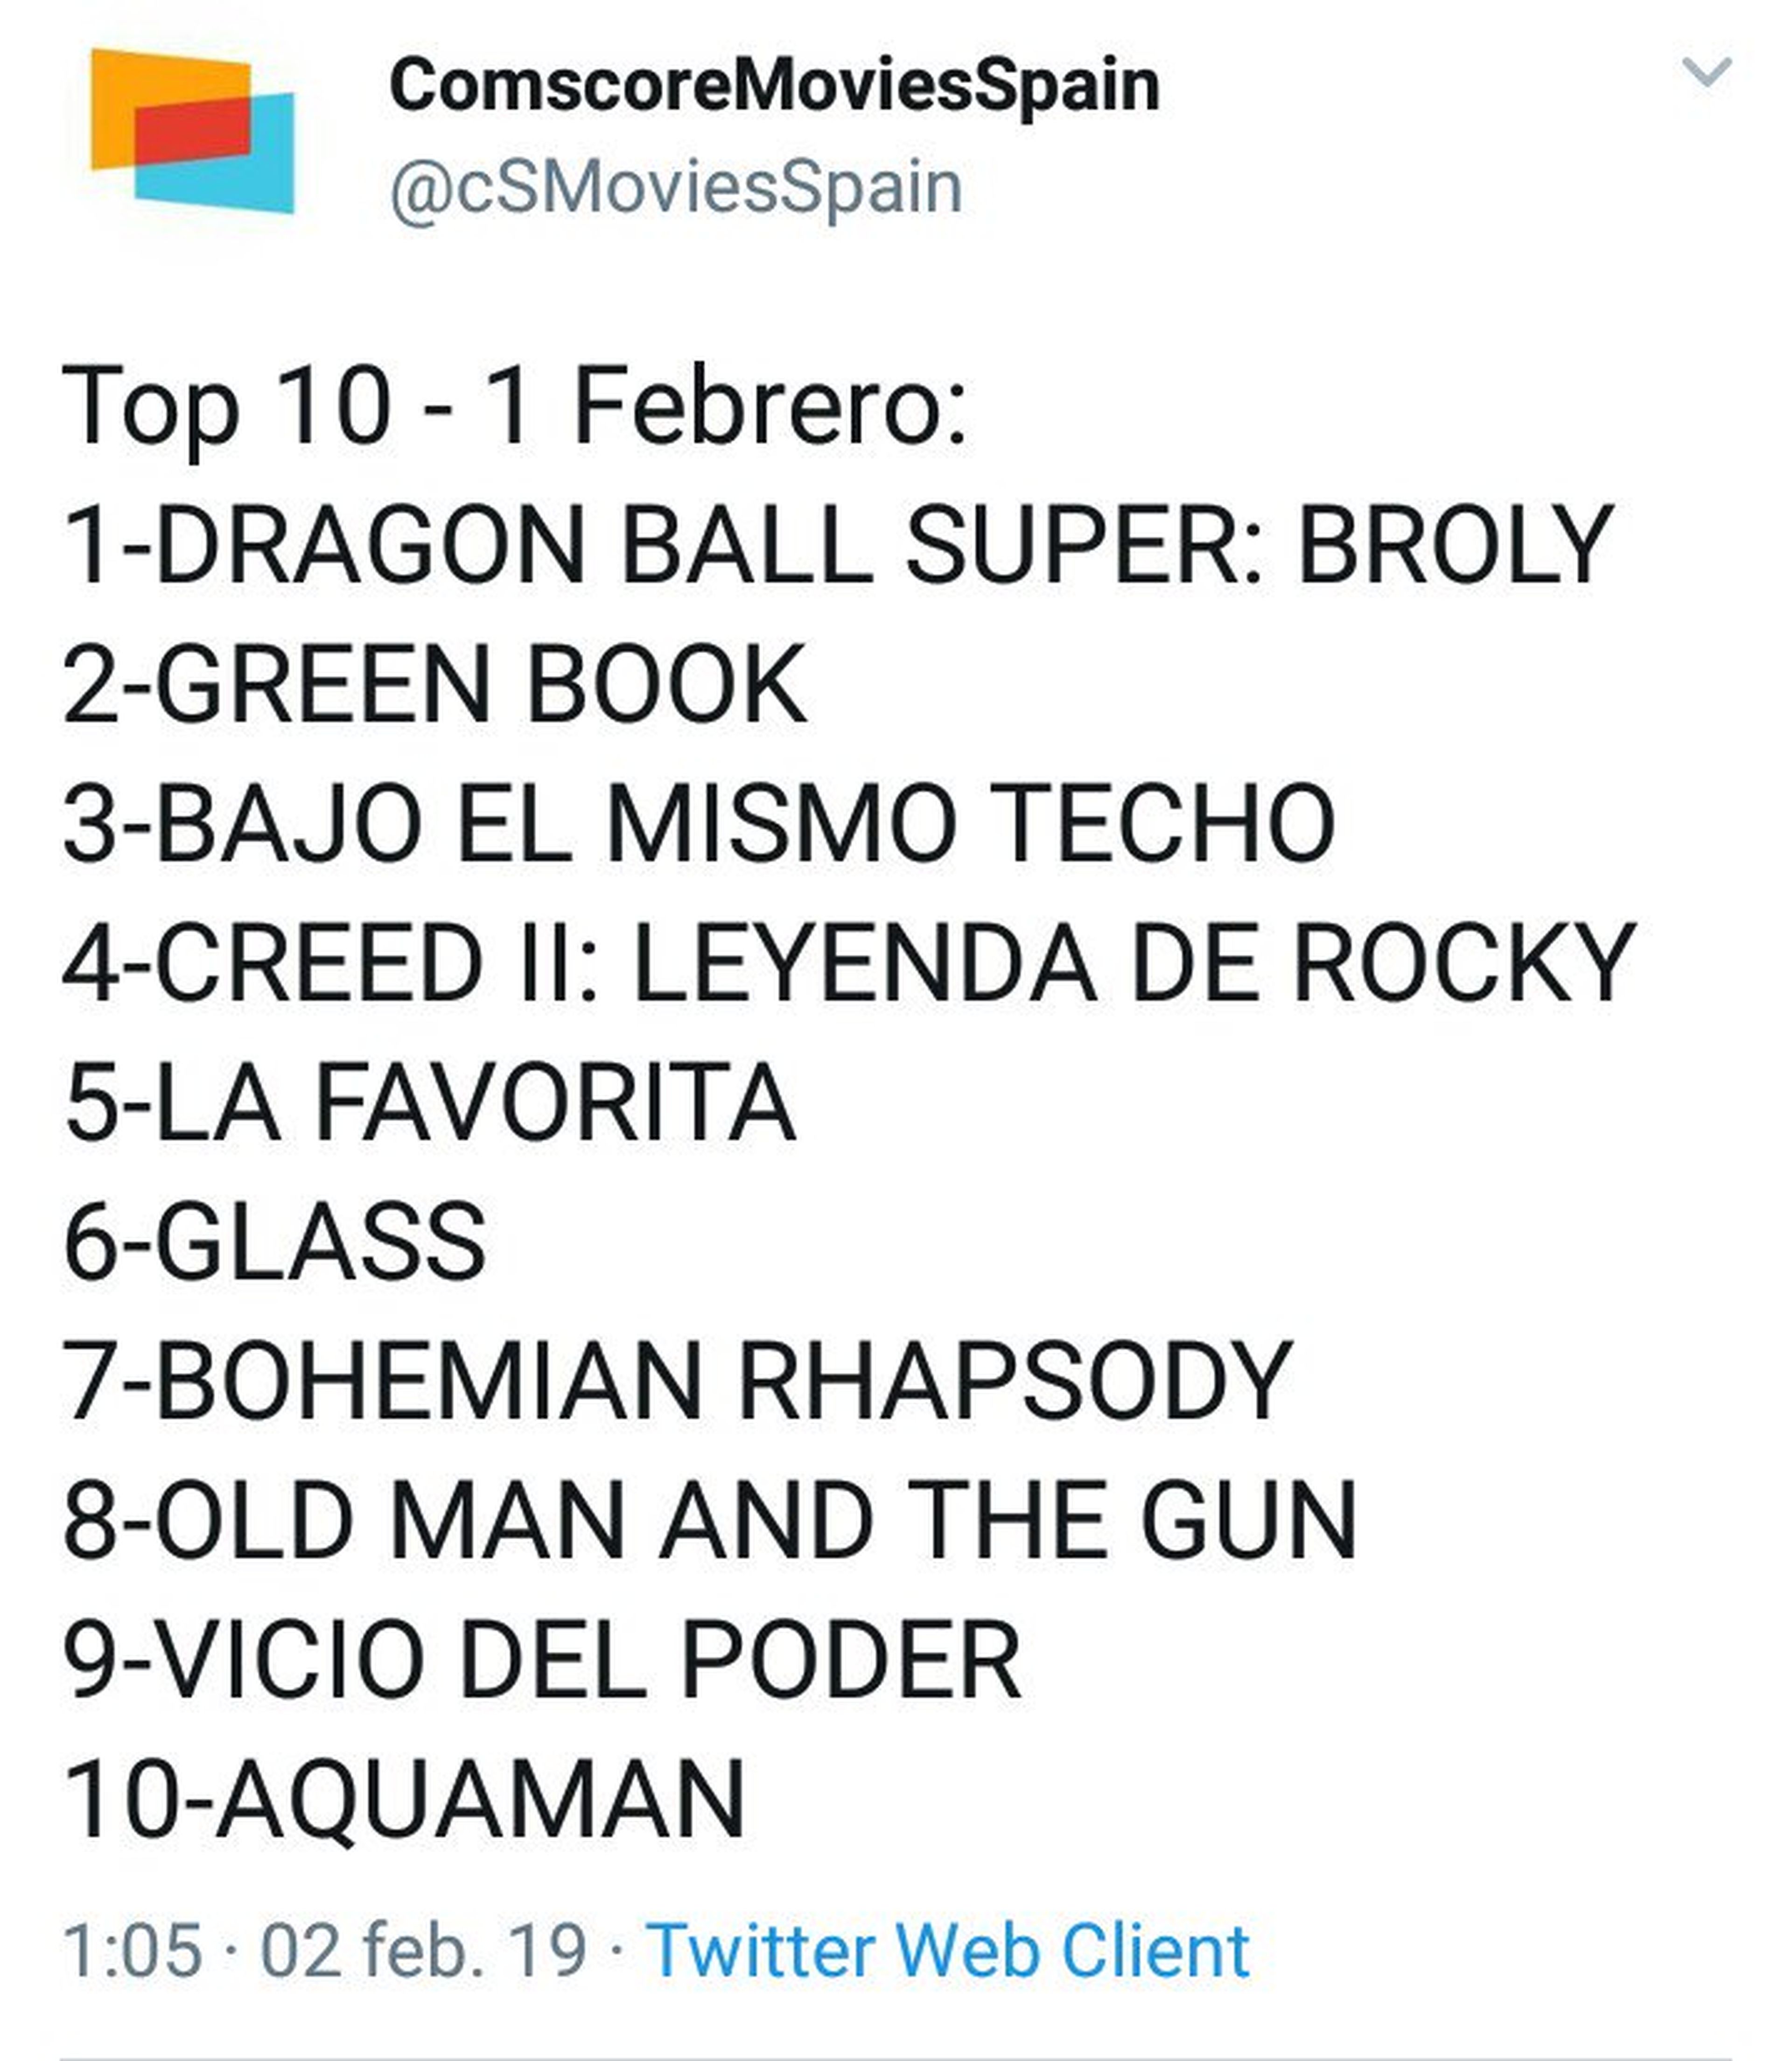 Dragon Ball Super Broly arrasa en España - Nº1 en taquilla